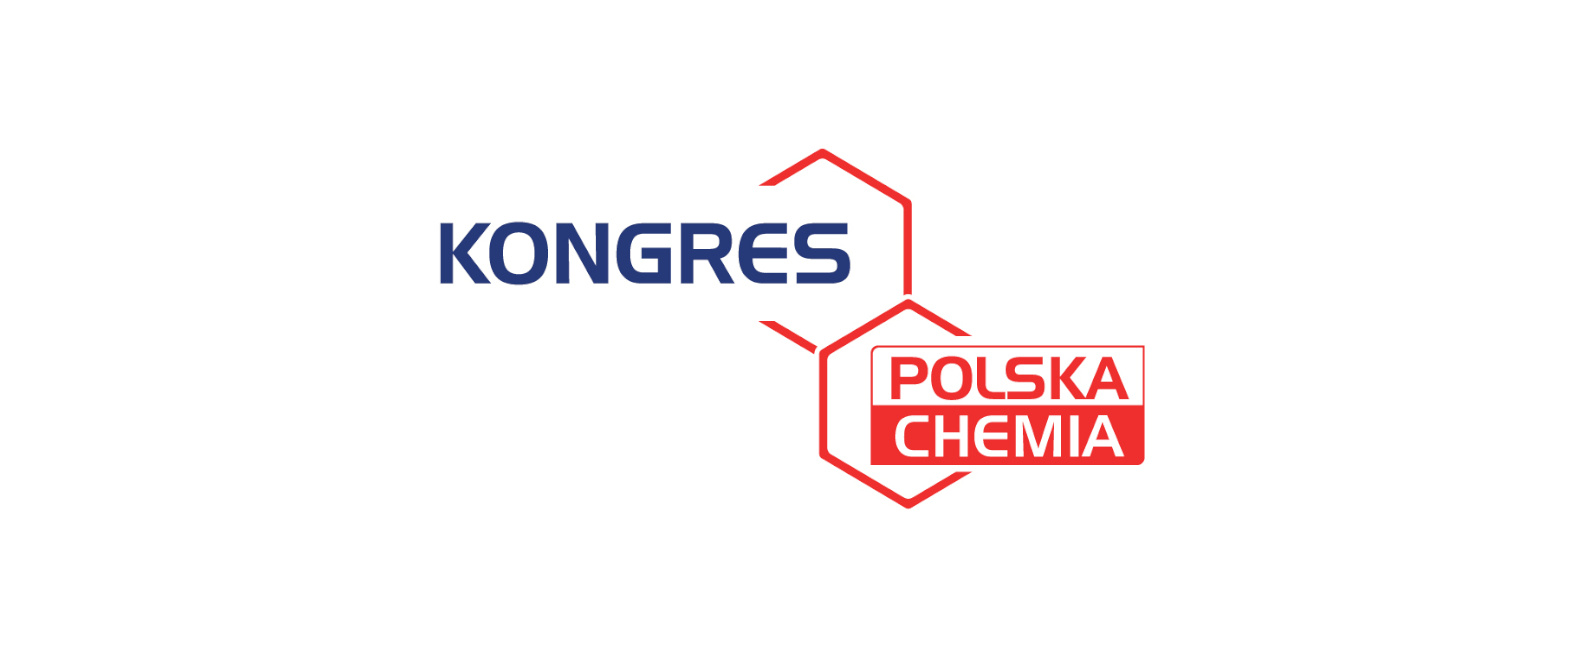 Już niedługo Kongres Polska Chemia